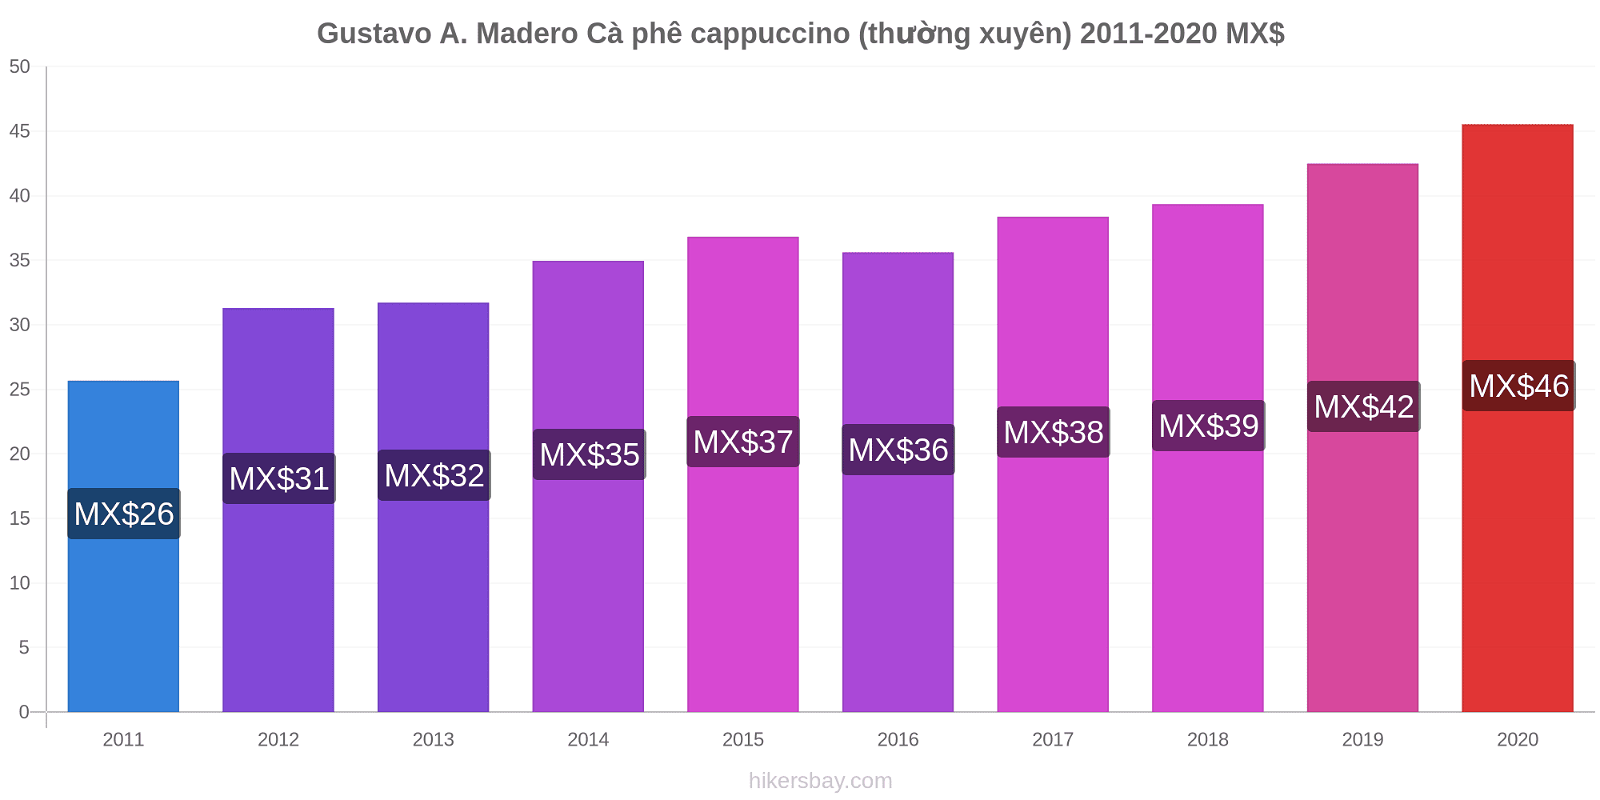 Gustavo A. Madero thay đổi giá Cà phê cappuccino (thường xuyên) hikersbay.com